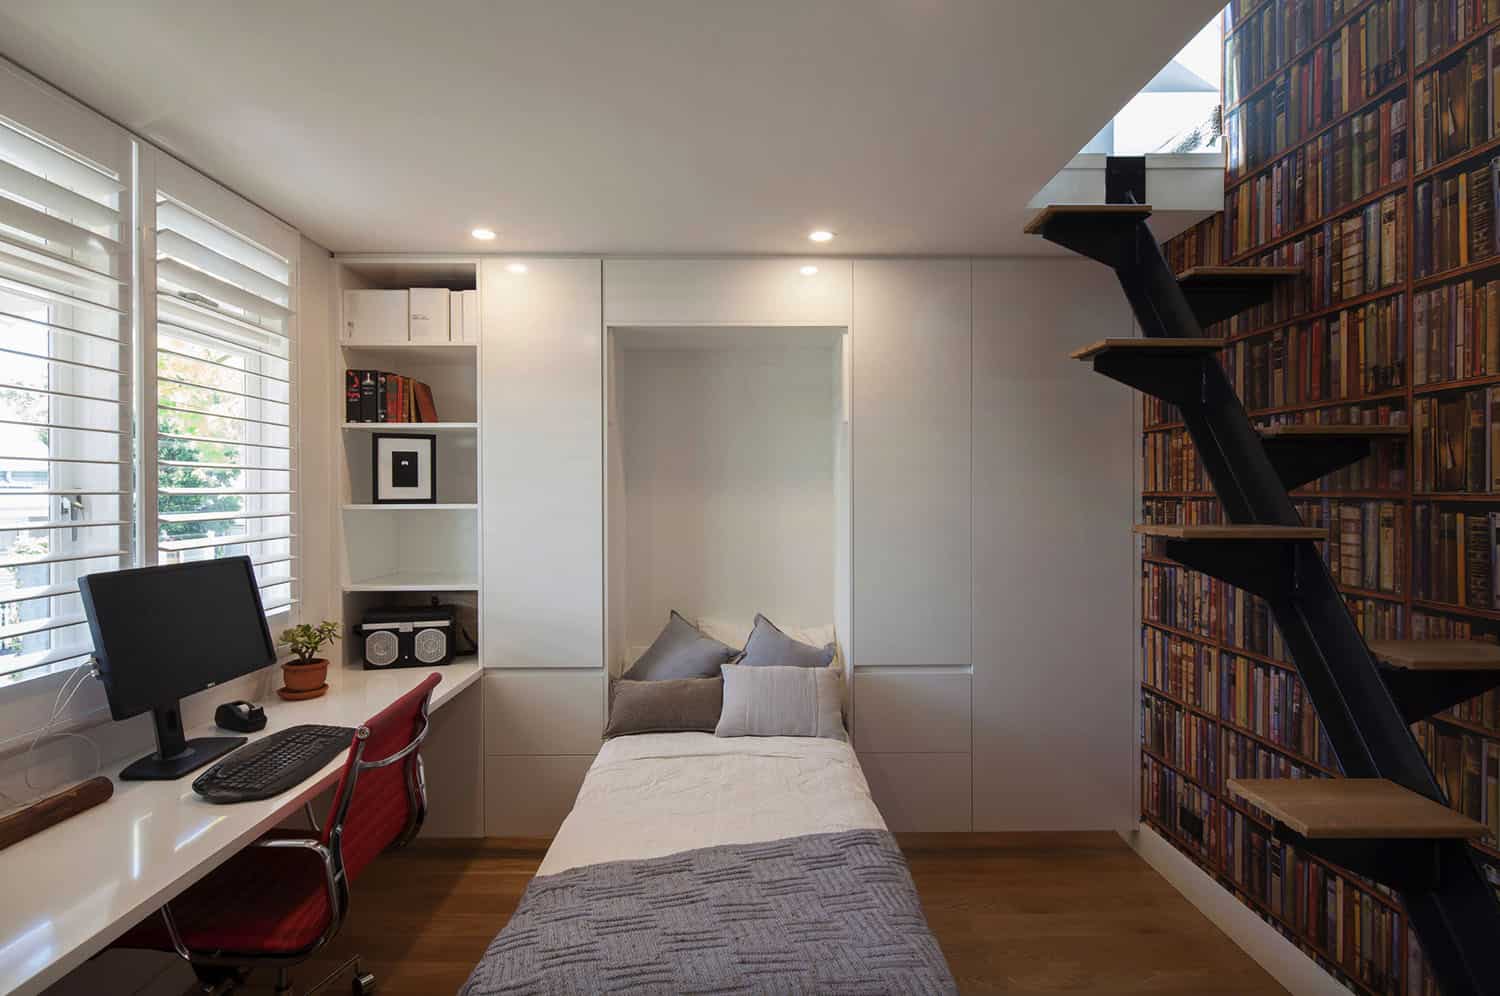 Thiết kế phòng ngủ kết hợp phòng làm việc có nên không?